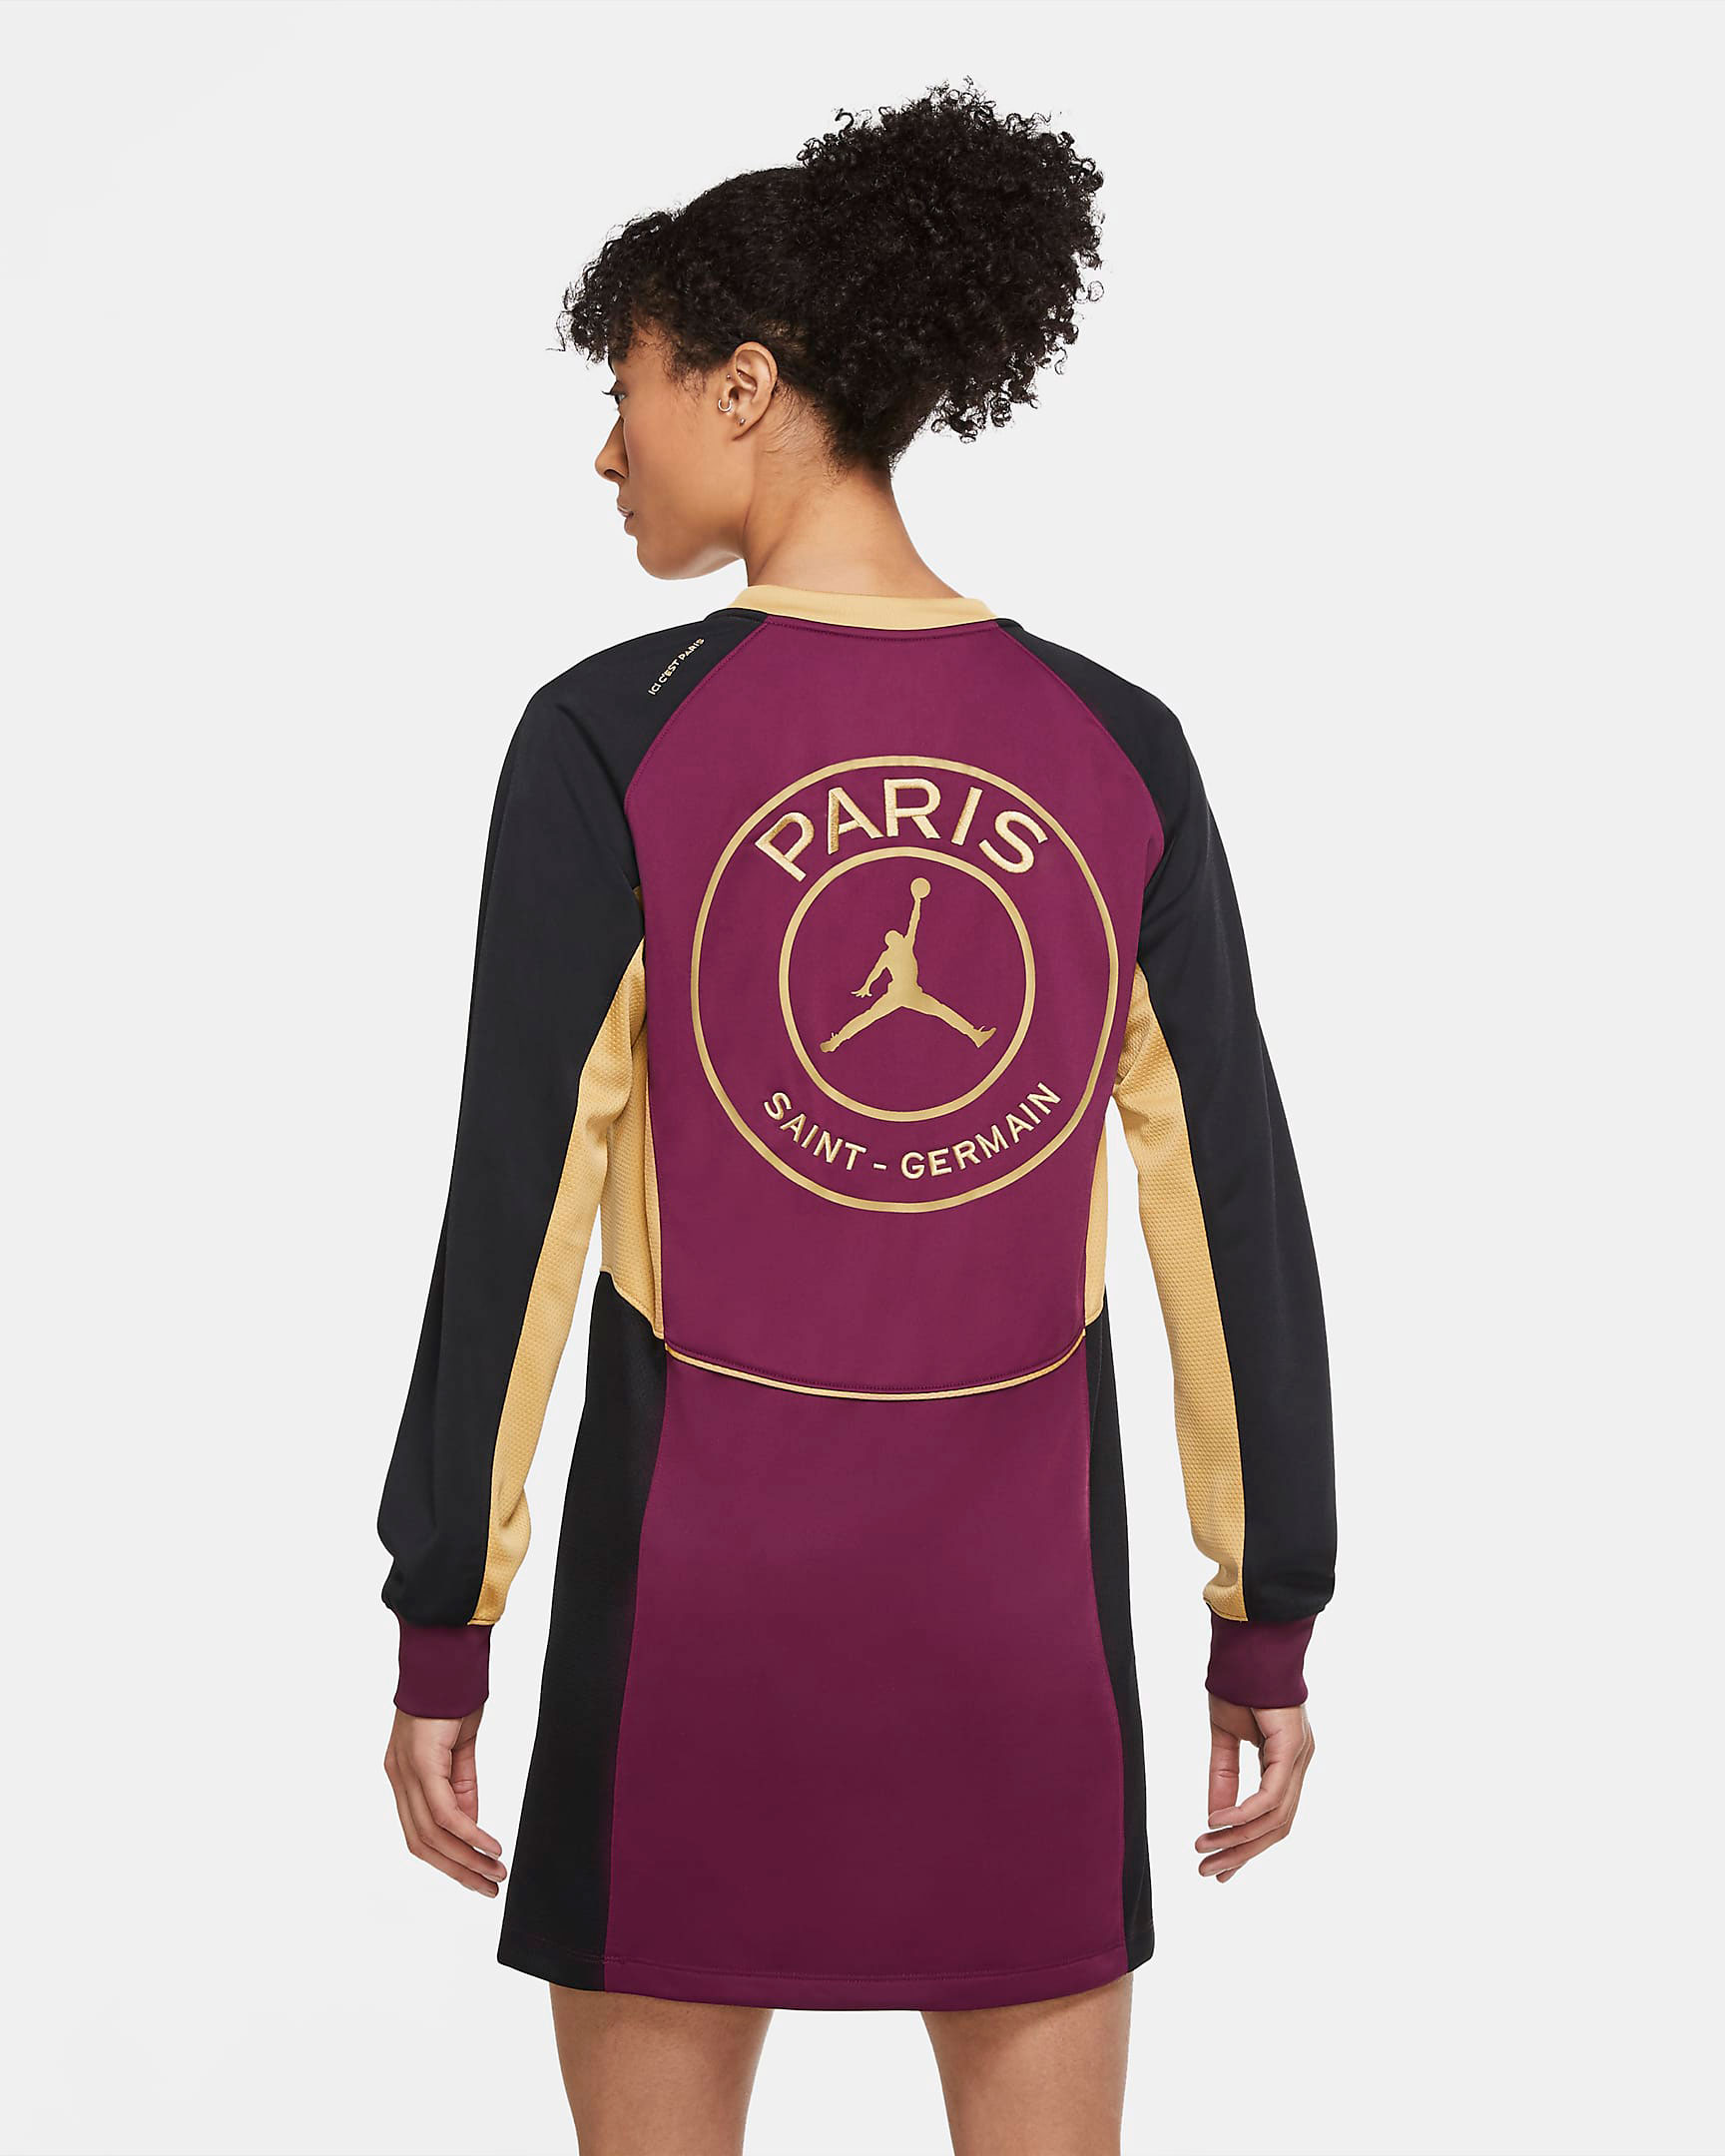 jordan-4-psg-paris-saint-germain-womens-dress-2